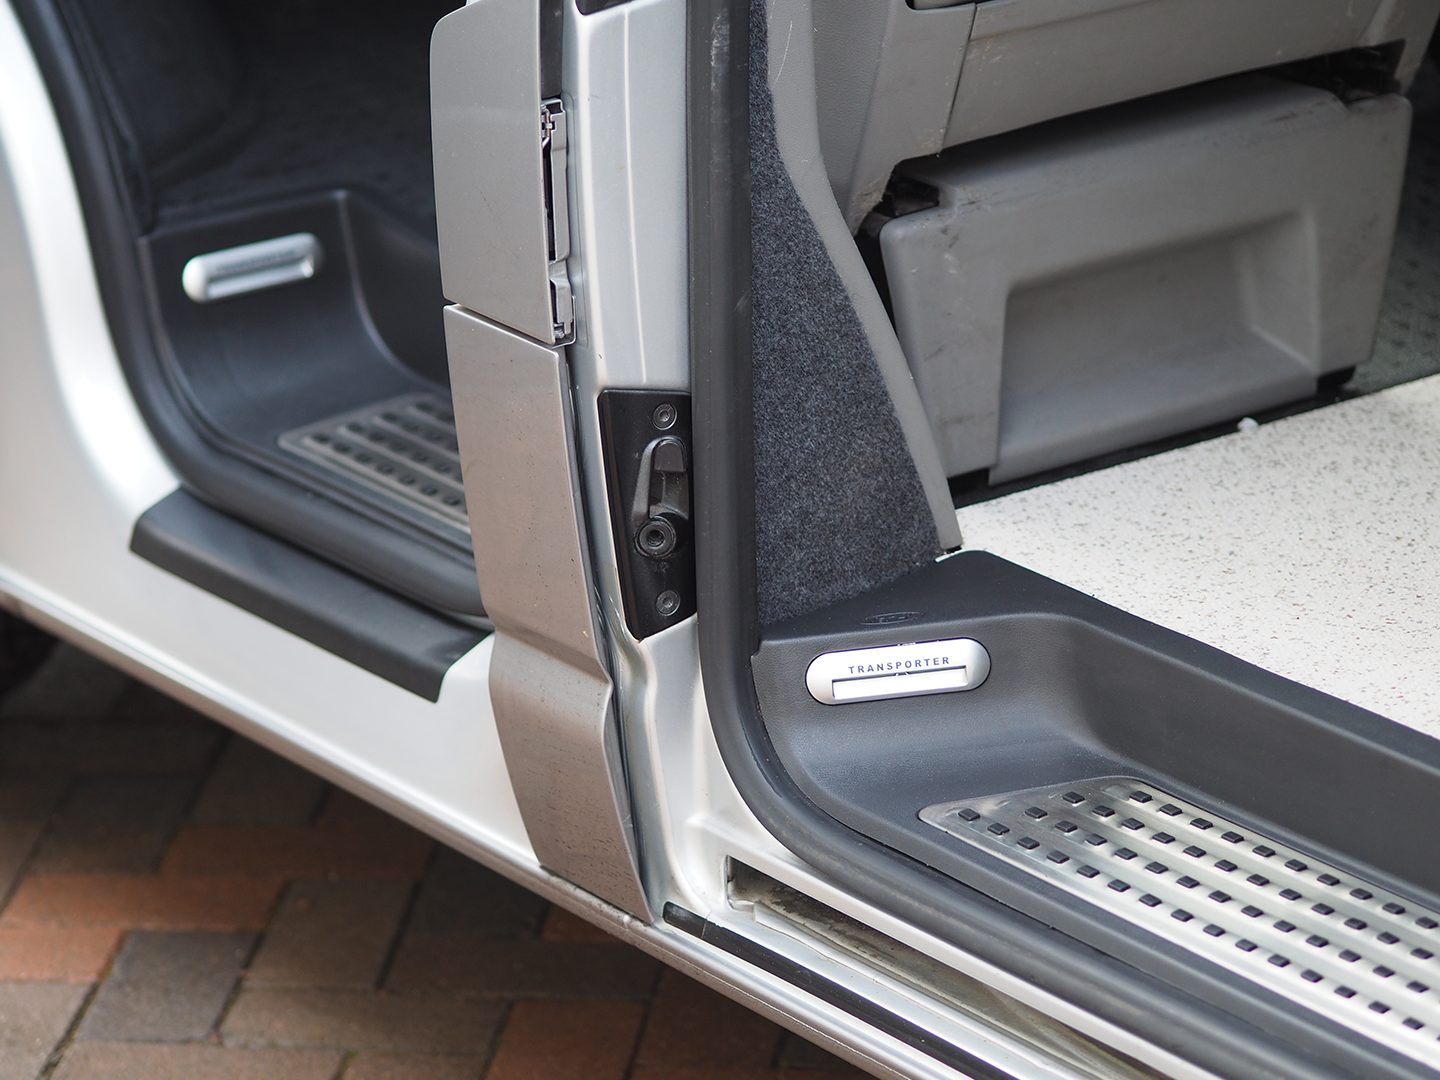 VW T6.1 Conjunto completo de escalones con estilo Caravelle, incluye conductor, pasajero y puerta lateral corrediza. Perfecto para la conversión de furgonetas camper